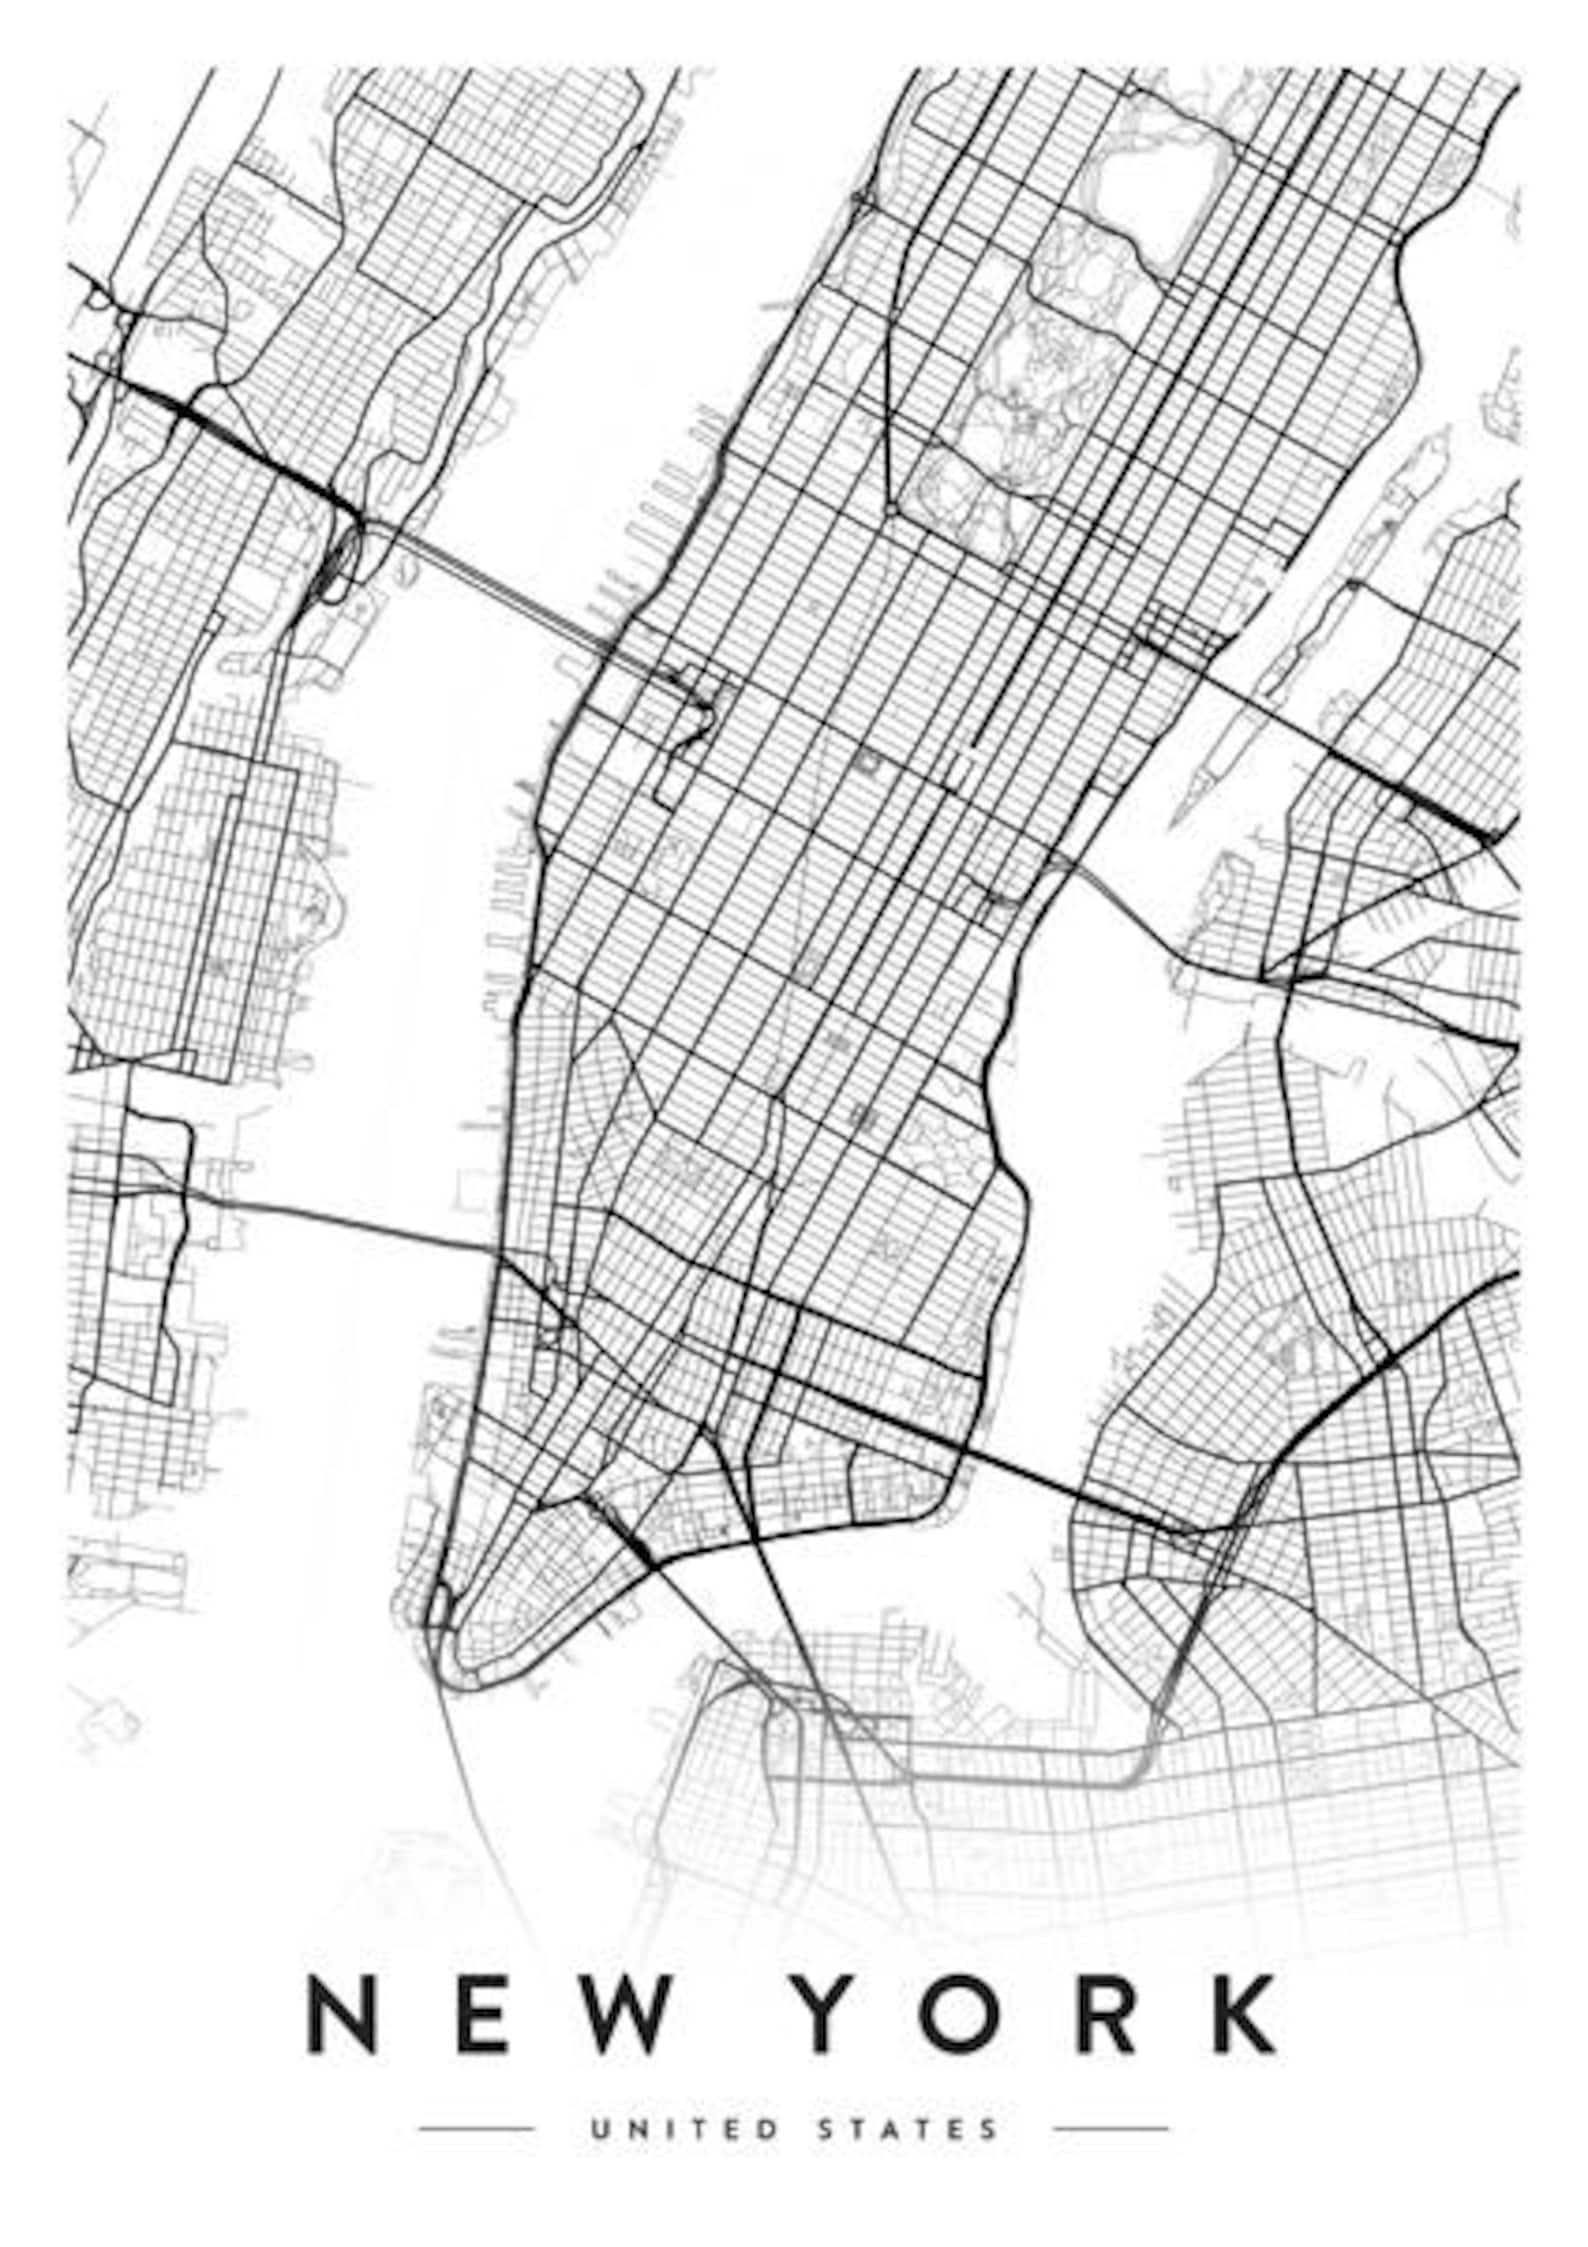 New york city map new york print new york city new york | Etsy